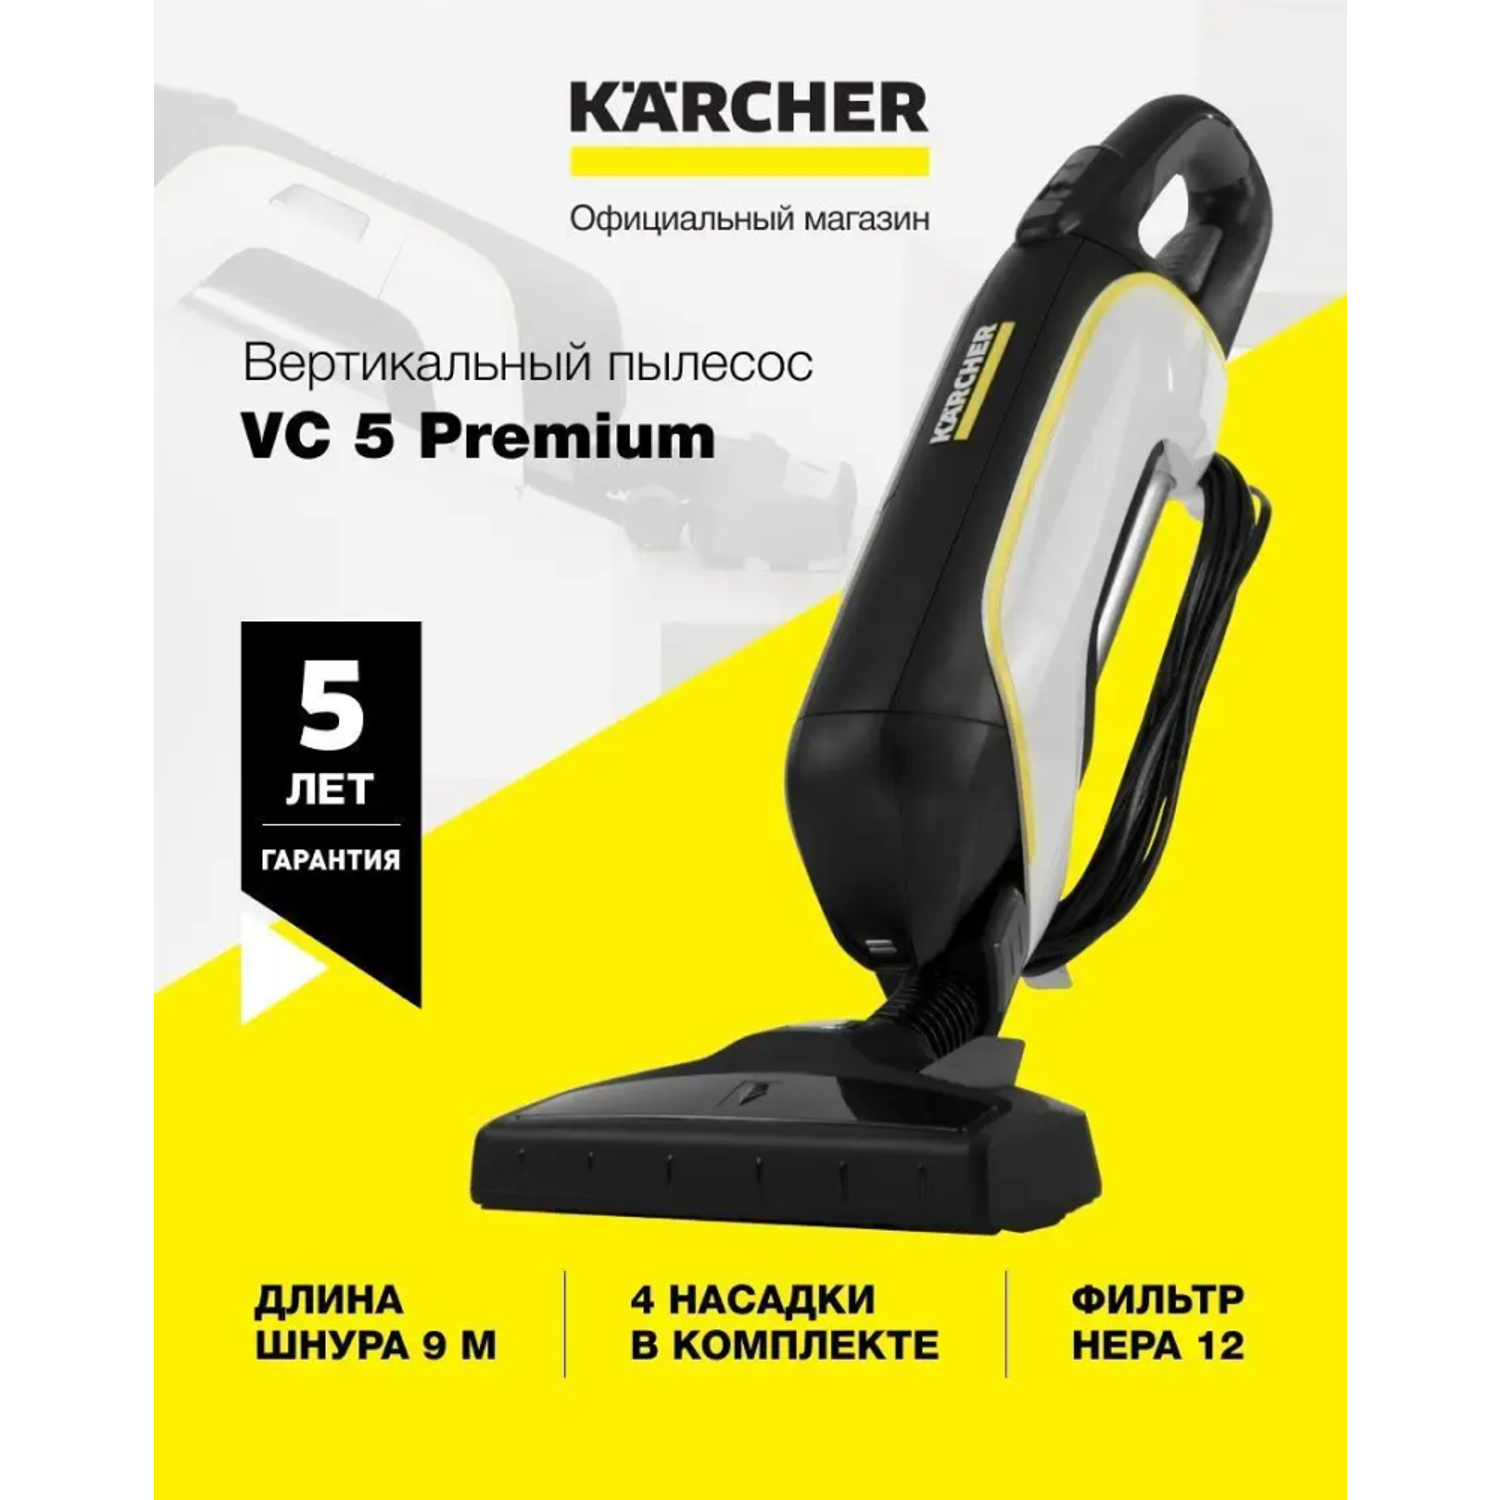 Вертикальный ручной пылесос Karcher VC5 Premium - фото 2